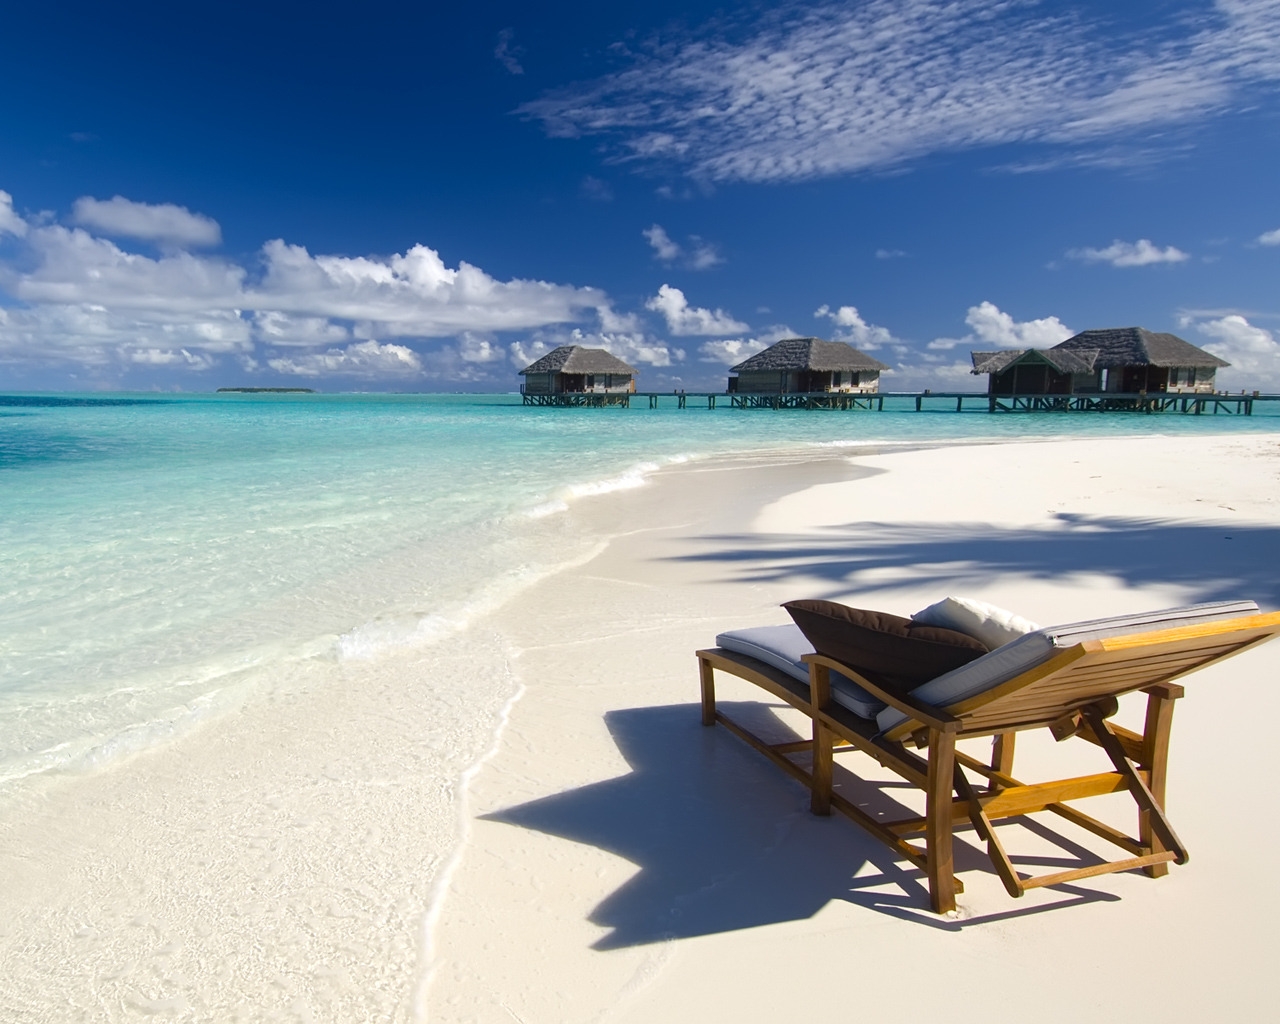 Maldives Conrad Beach for 1280 x 1024 resolution